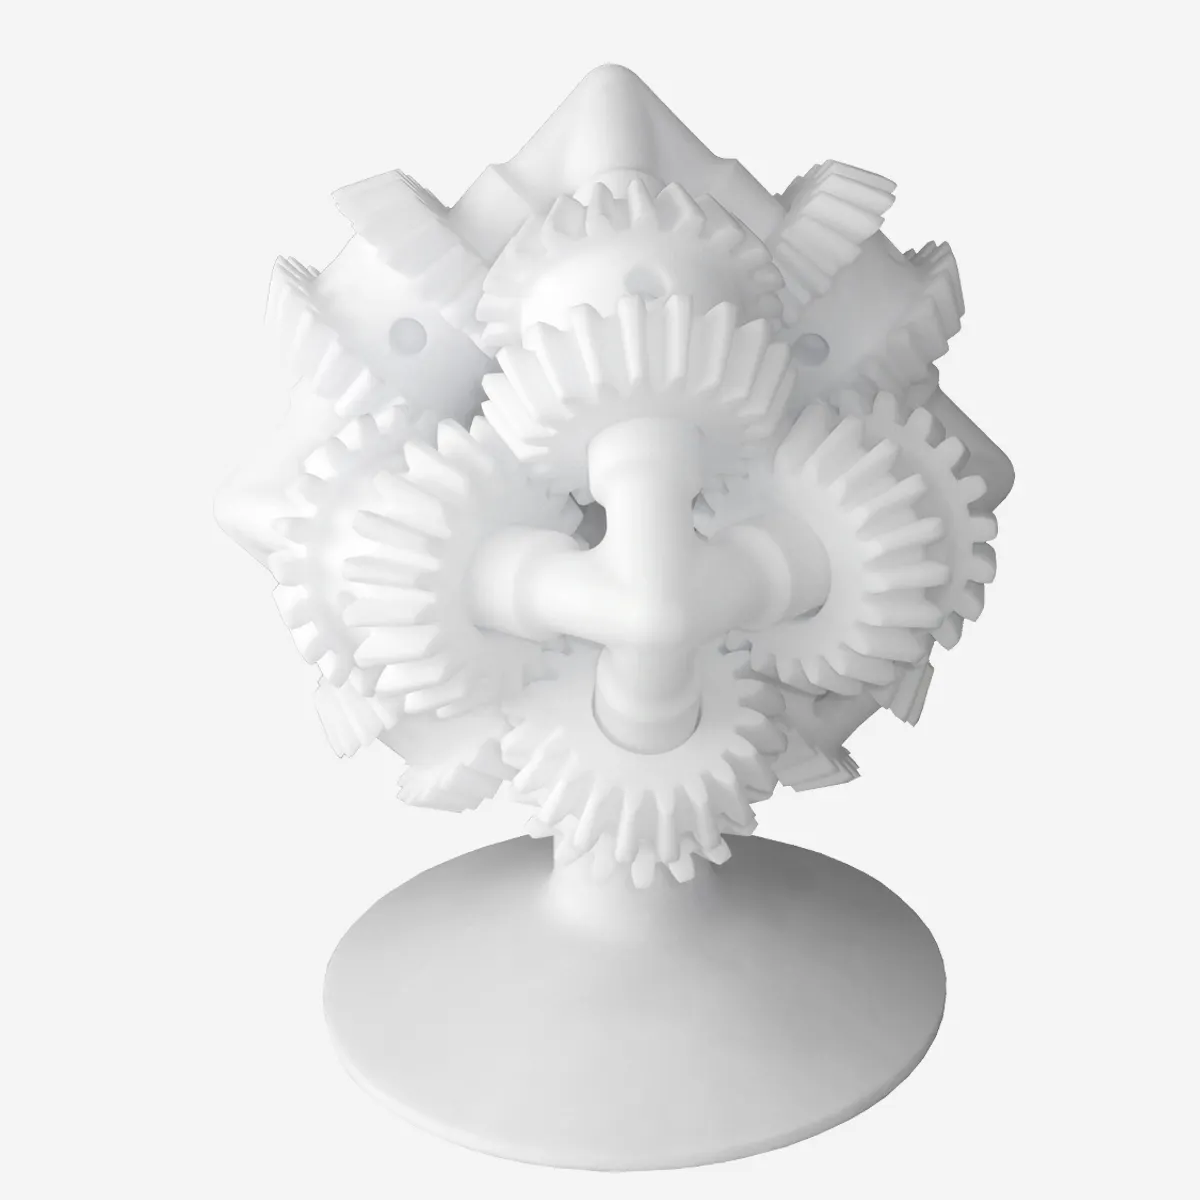 Ustom-servicio de impresión en 3D, impresión en ABS, fabricación de prototipo esin